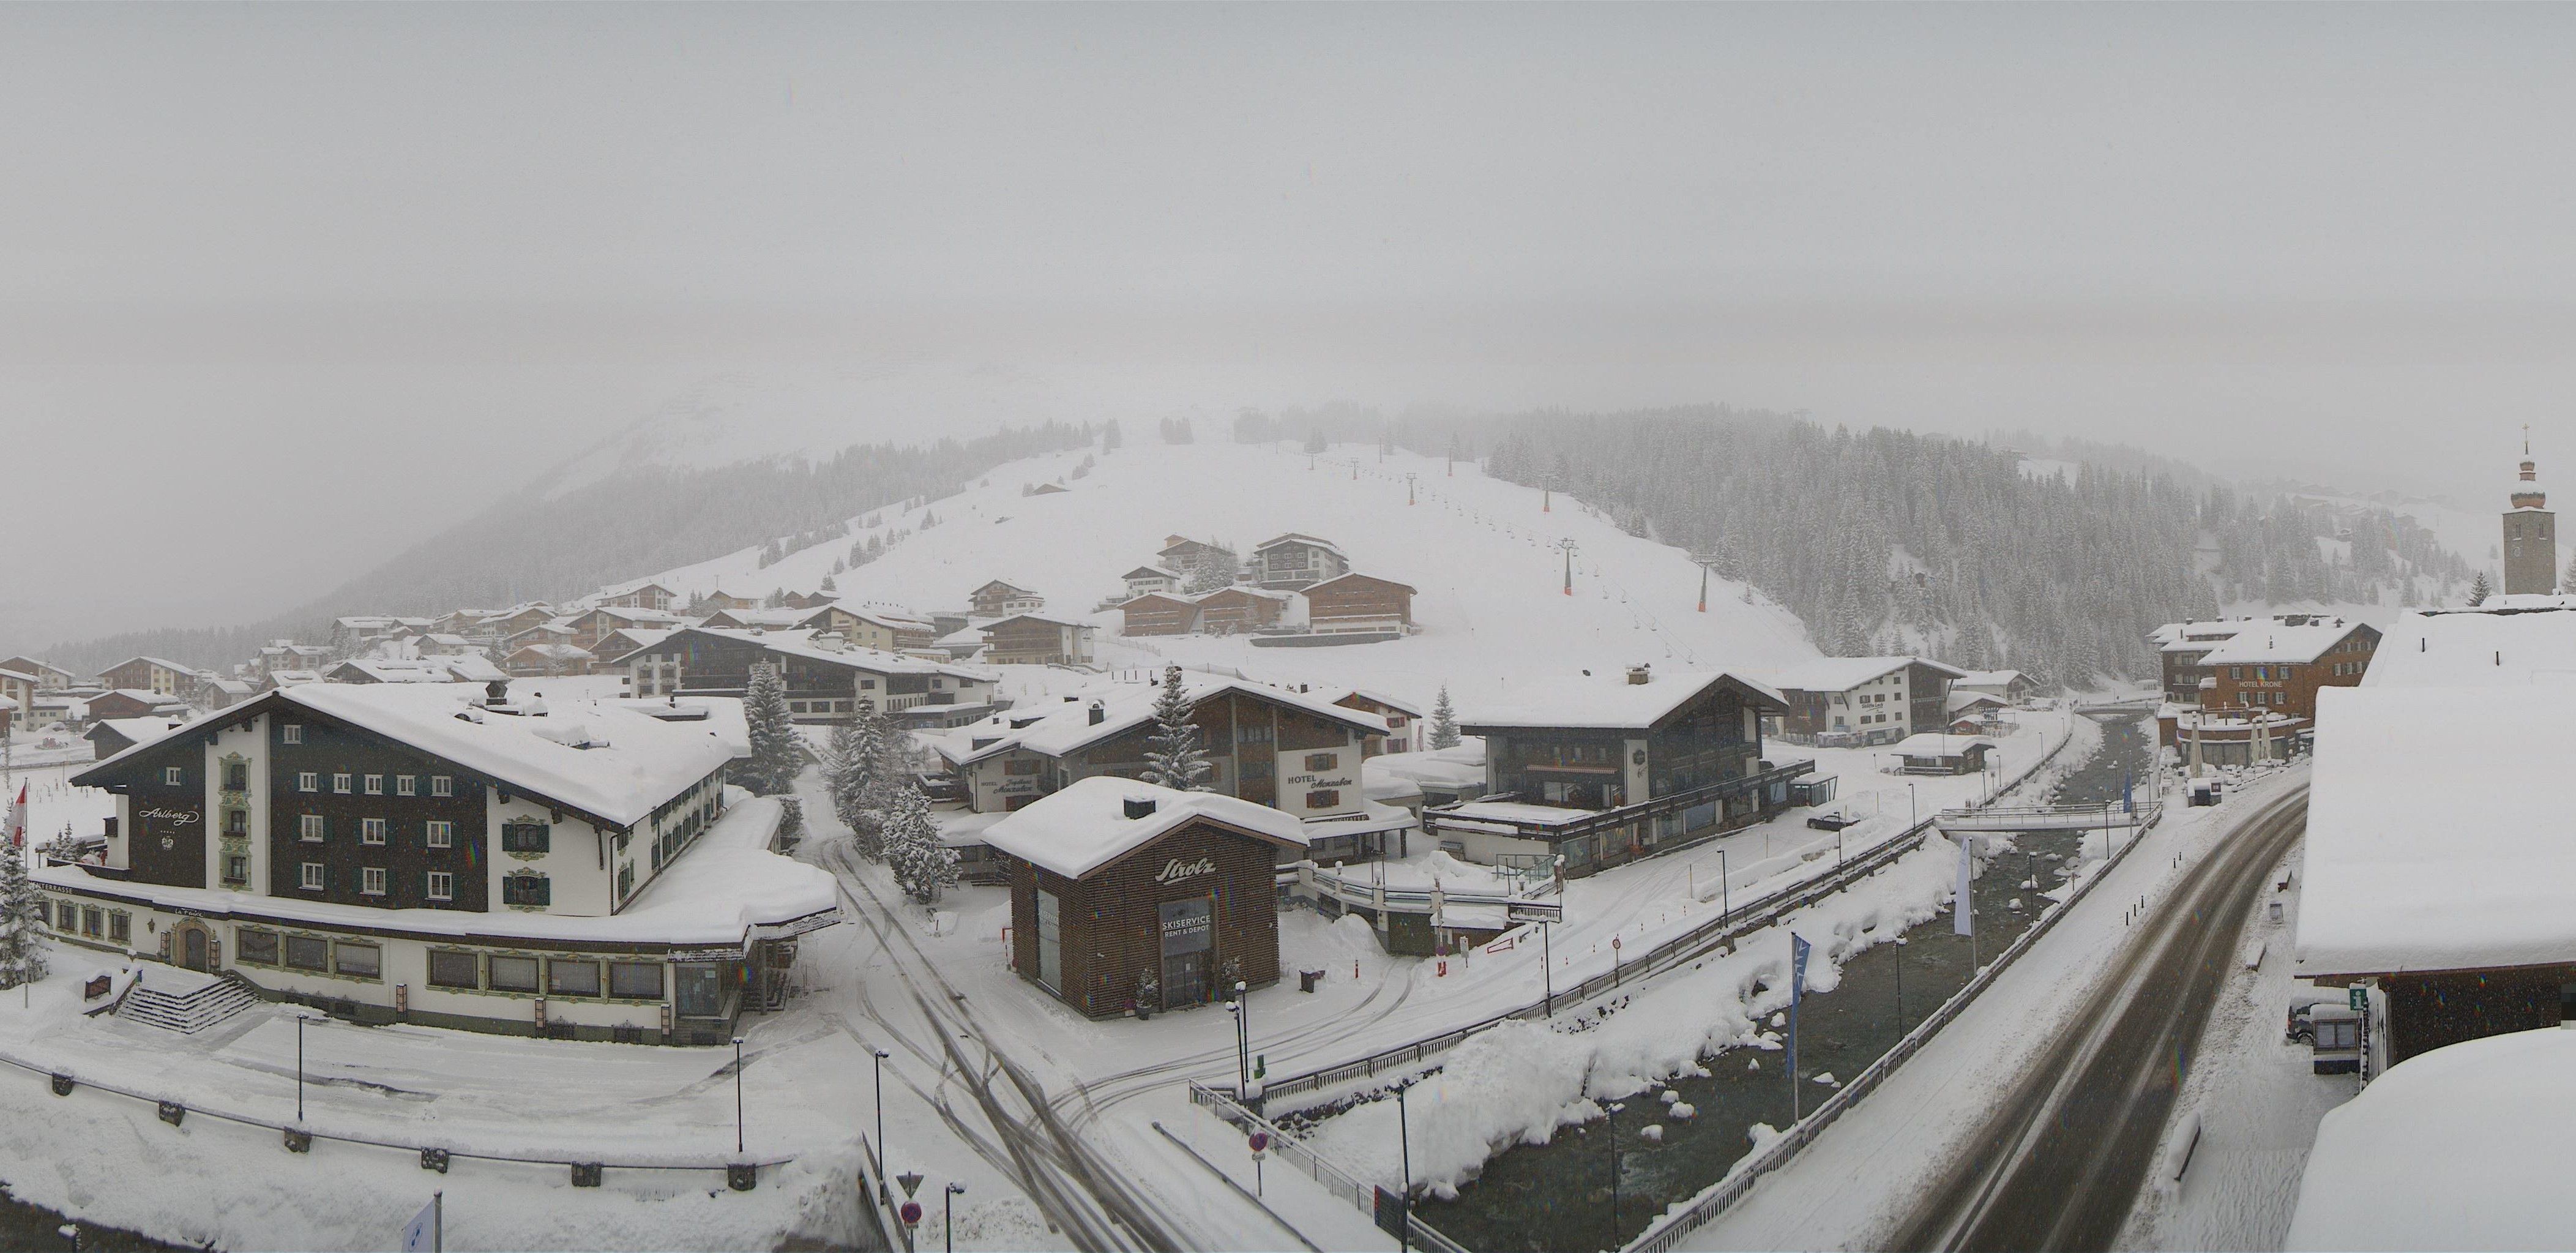 Ook in Lech kan er ruim een meter sneeuw vallen (lechzuers.com)